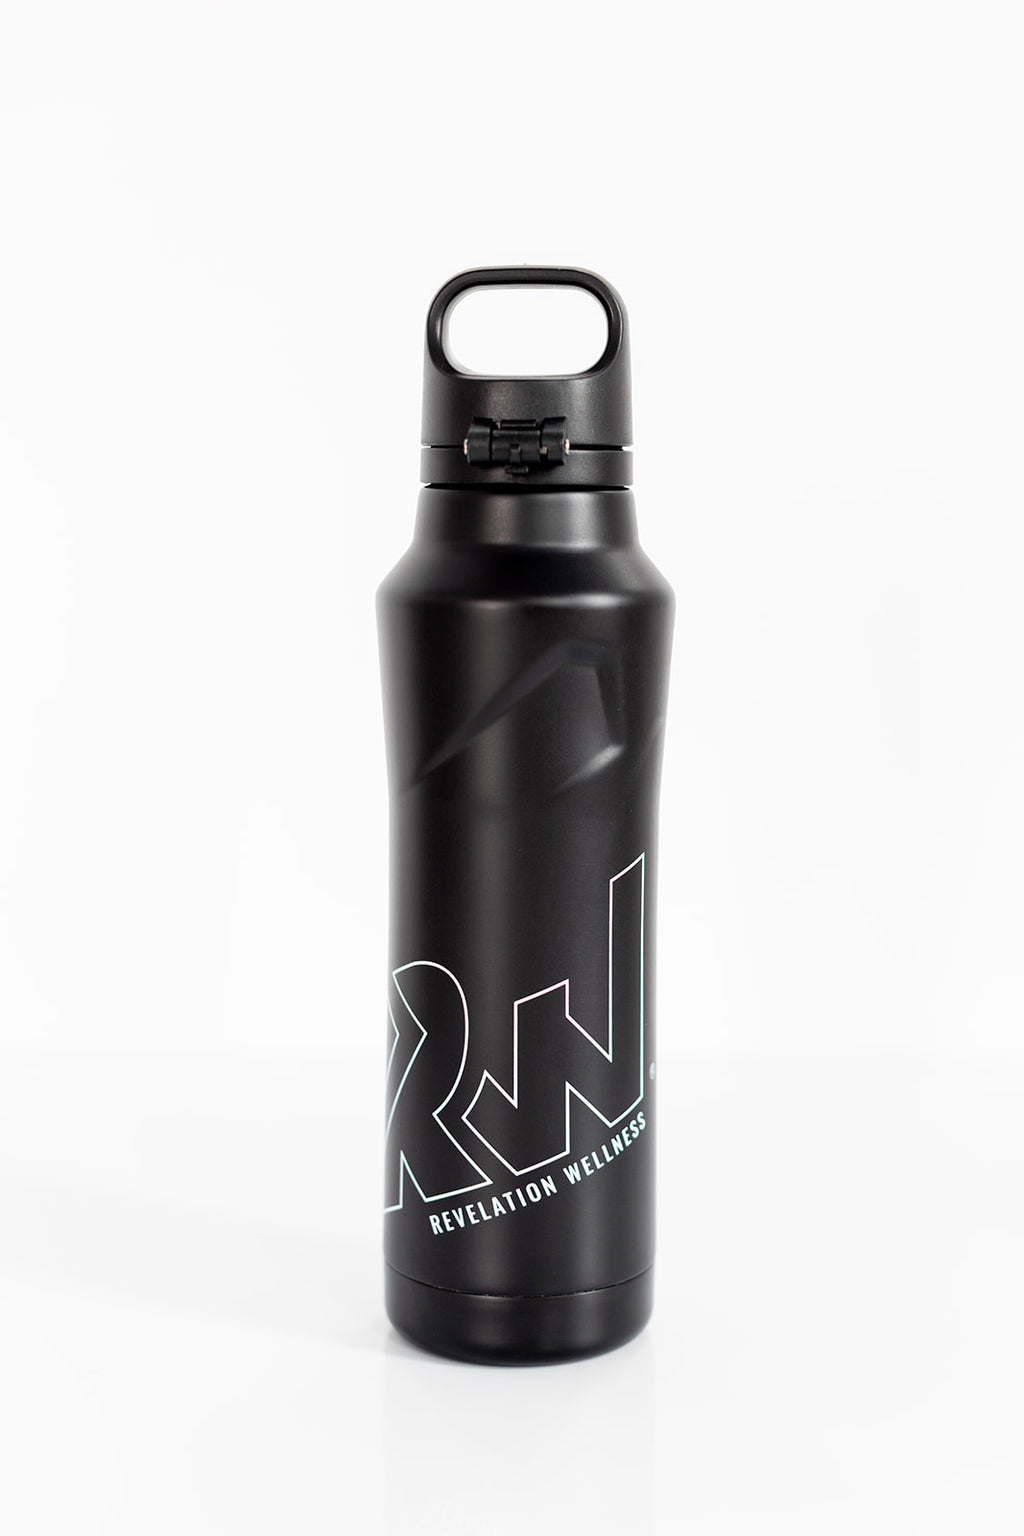 Love > Fear® Premium Water Bottle